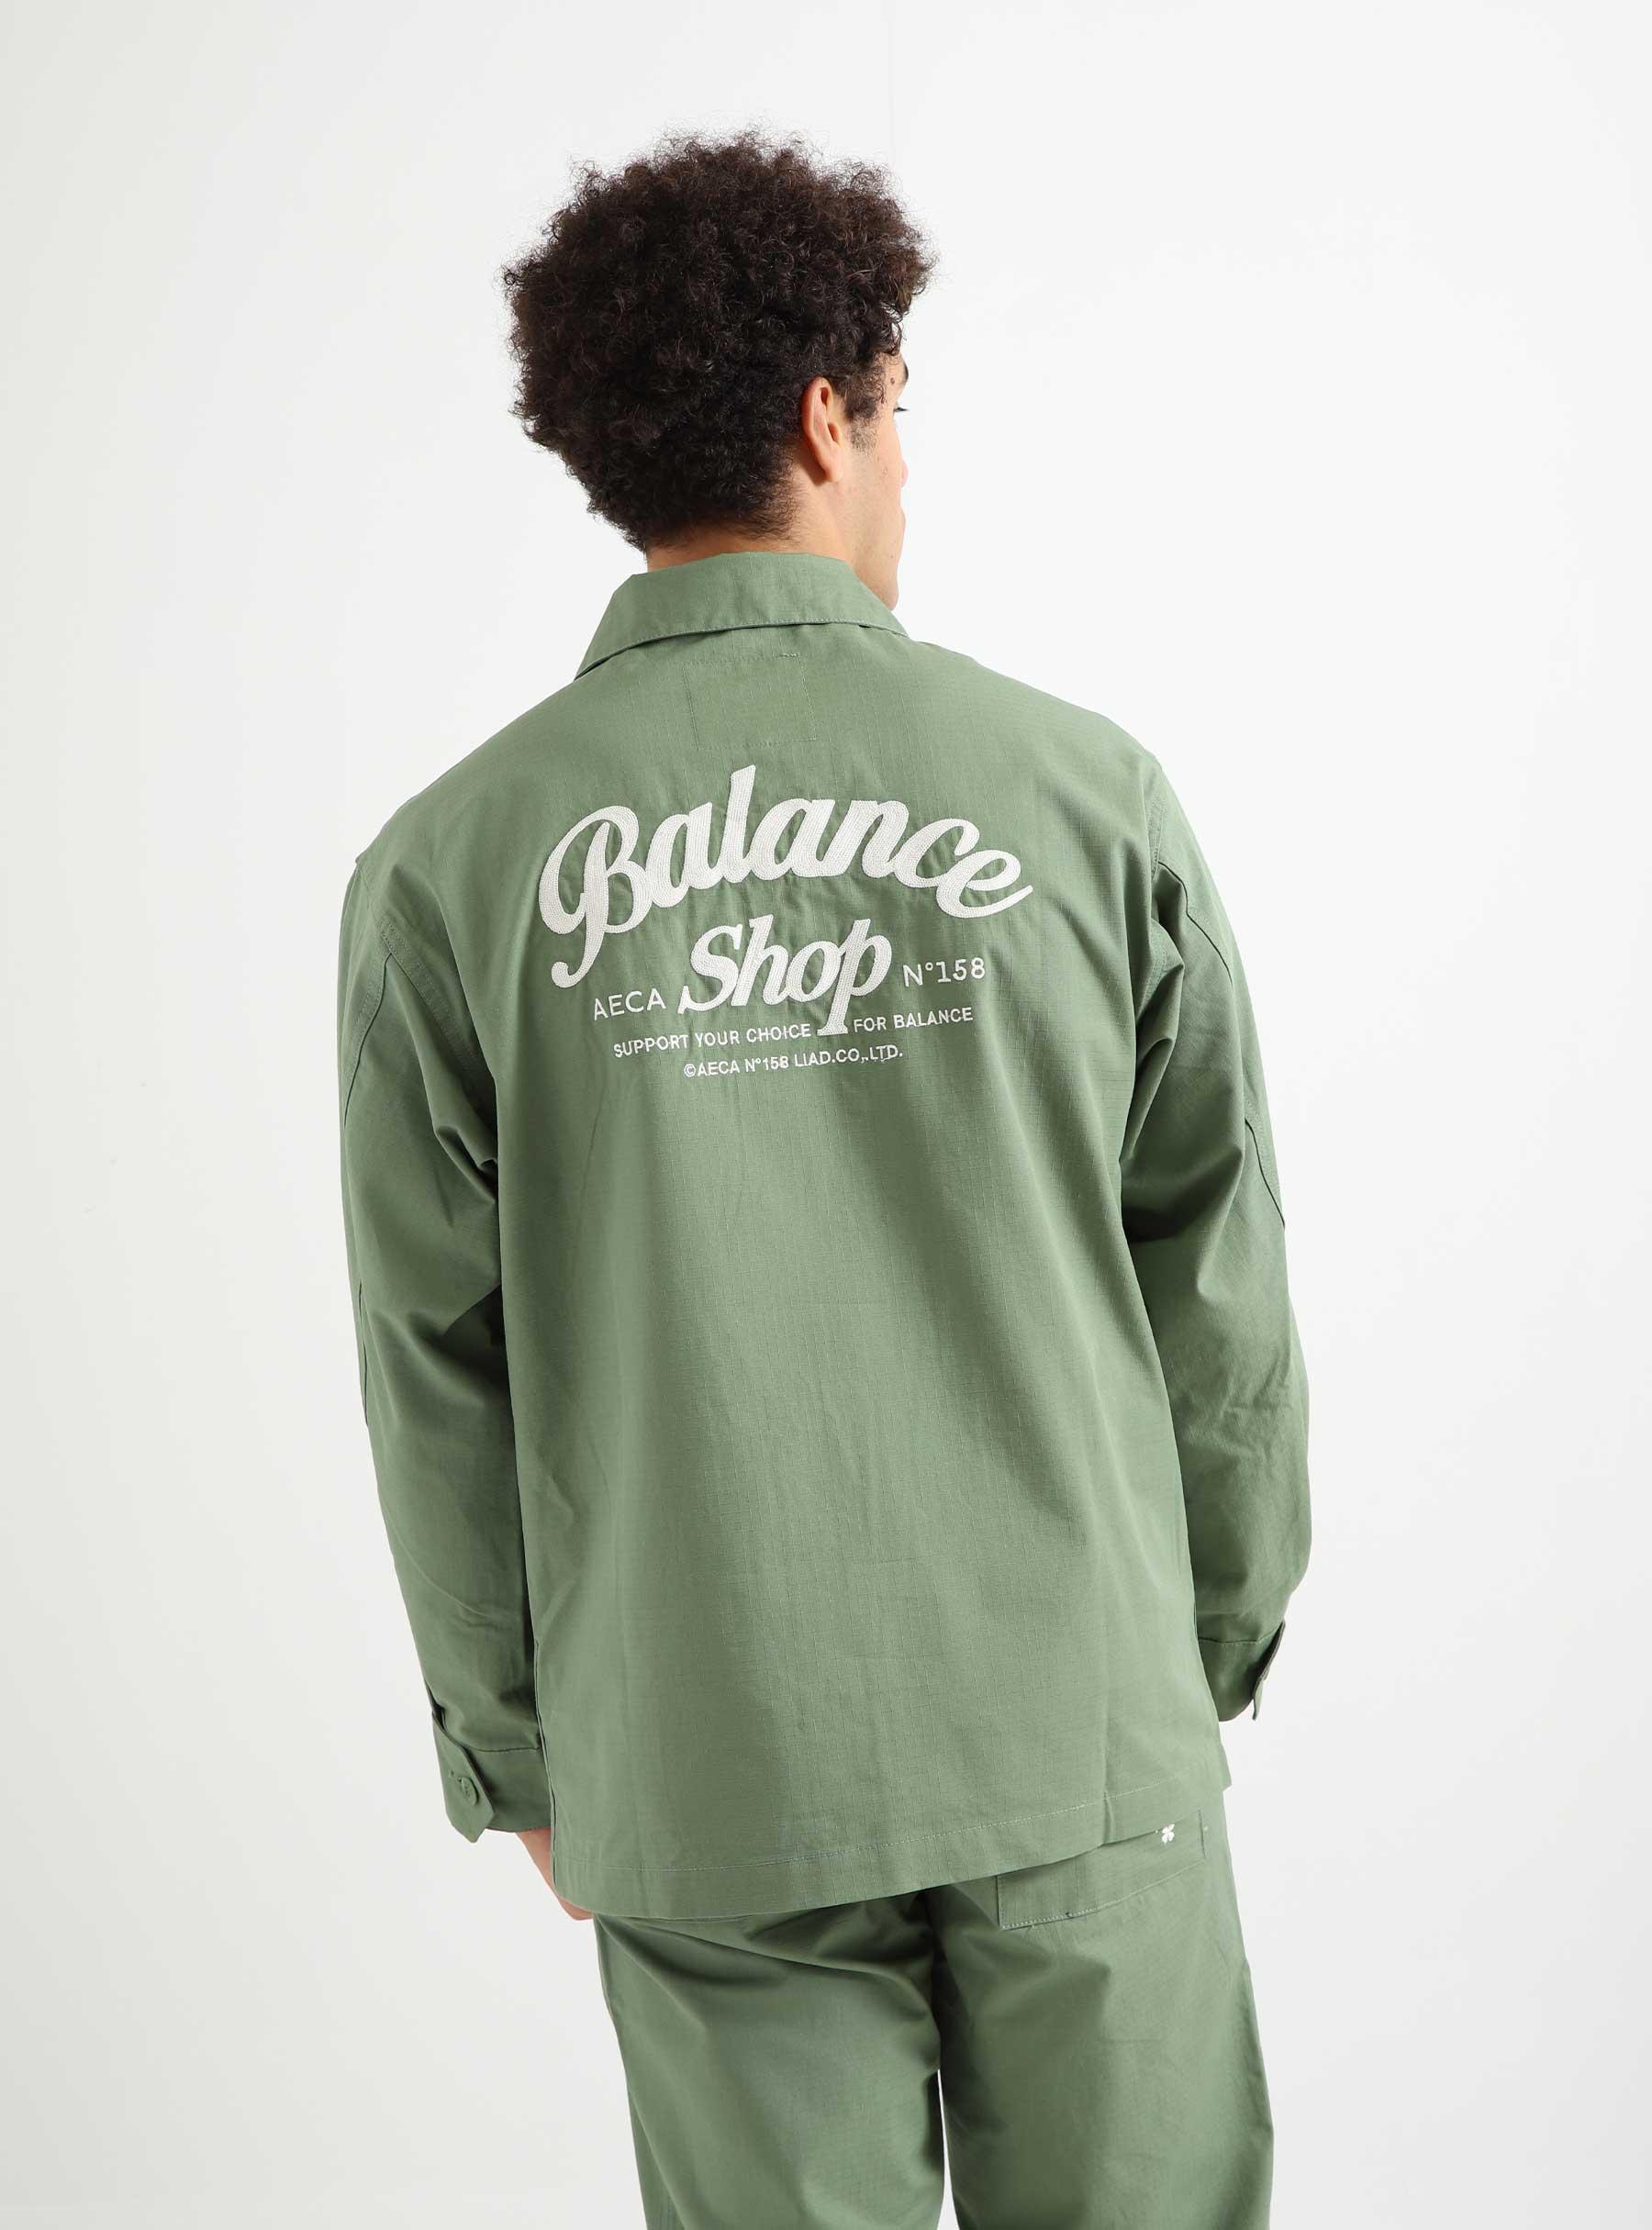 Balance Shop Chore Jacket Light Olive